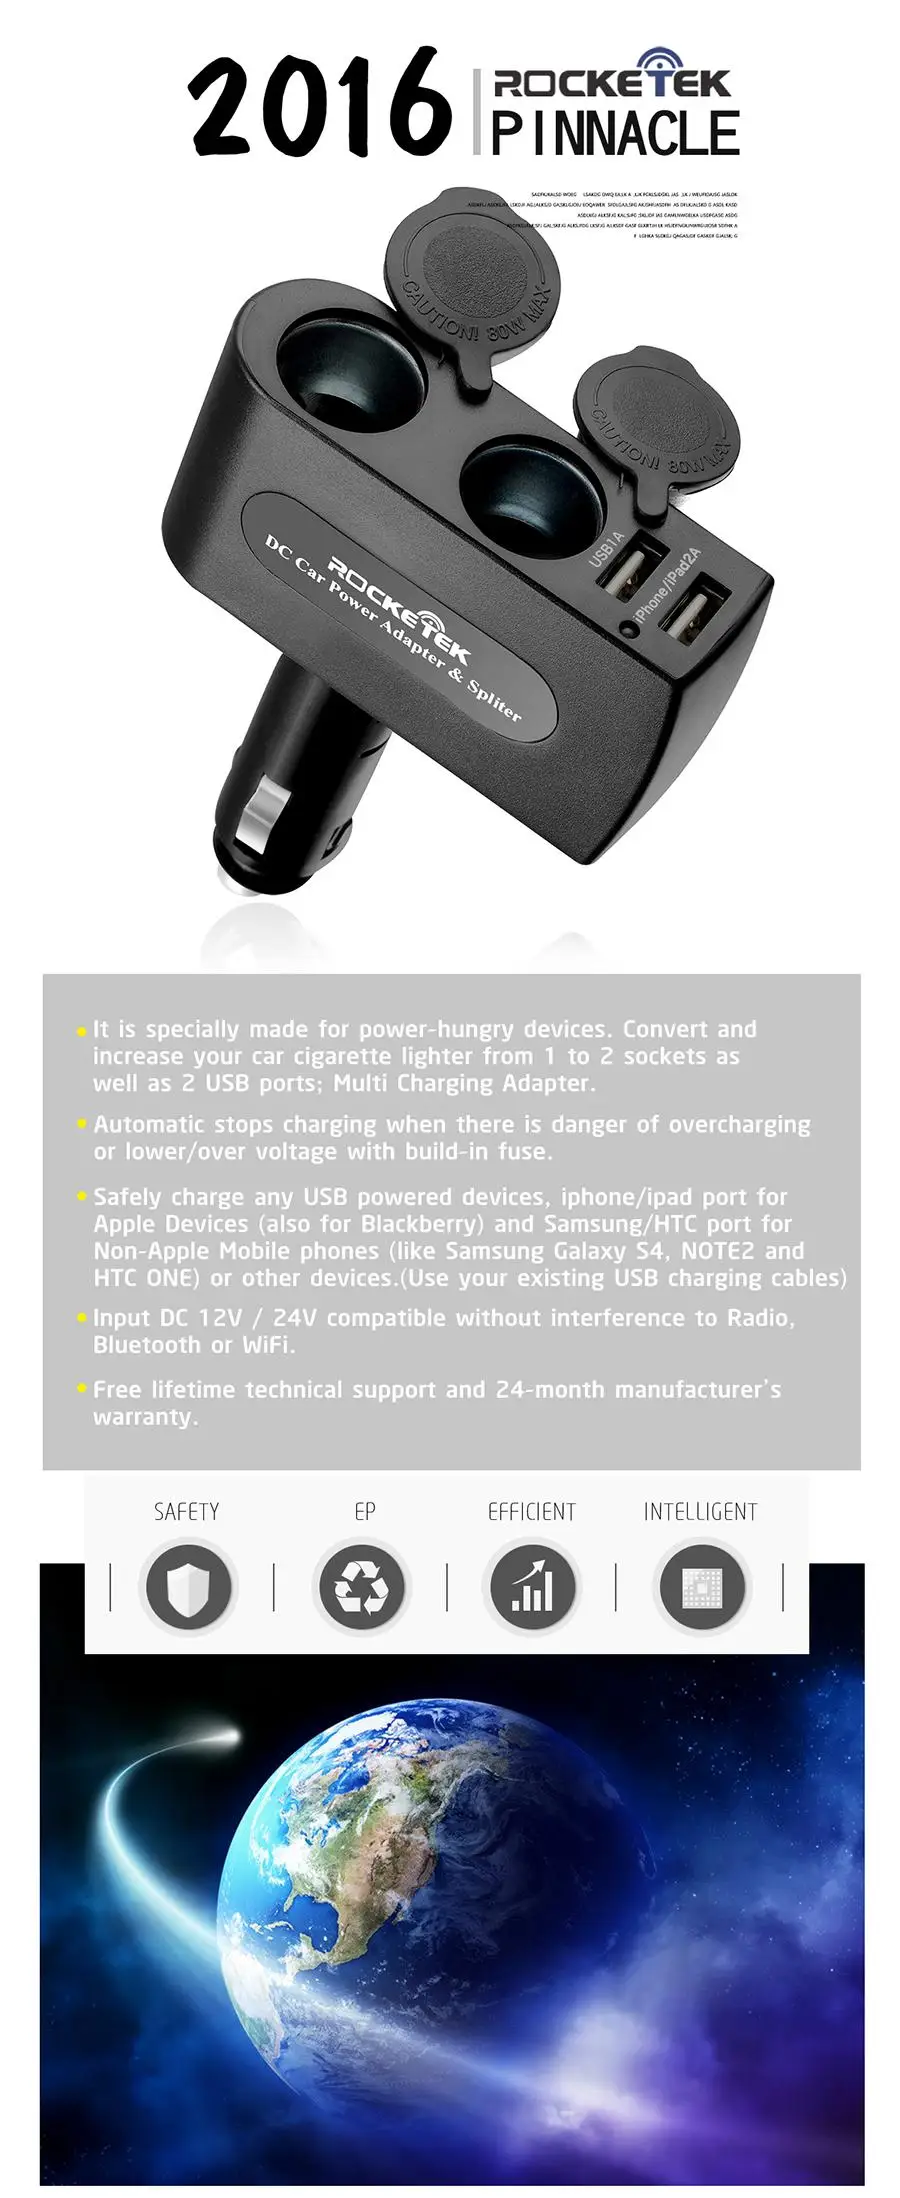 Автомобильное зарядное устройство Rocketek multi usb smart IC 2 USB 3.1A 2 гнезда прикуривателя аксессуары для телефона samsung Автомобильное зарядное устройство